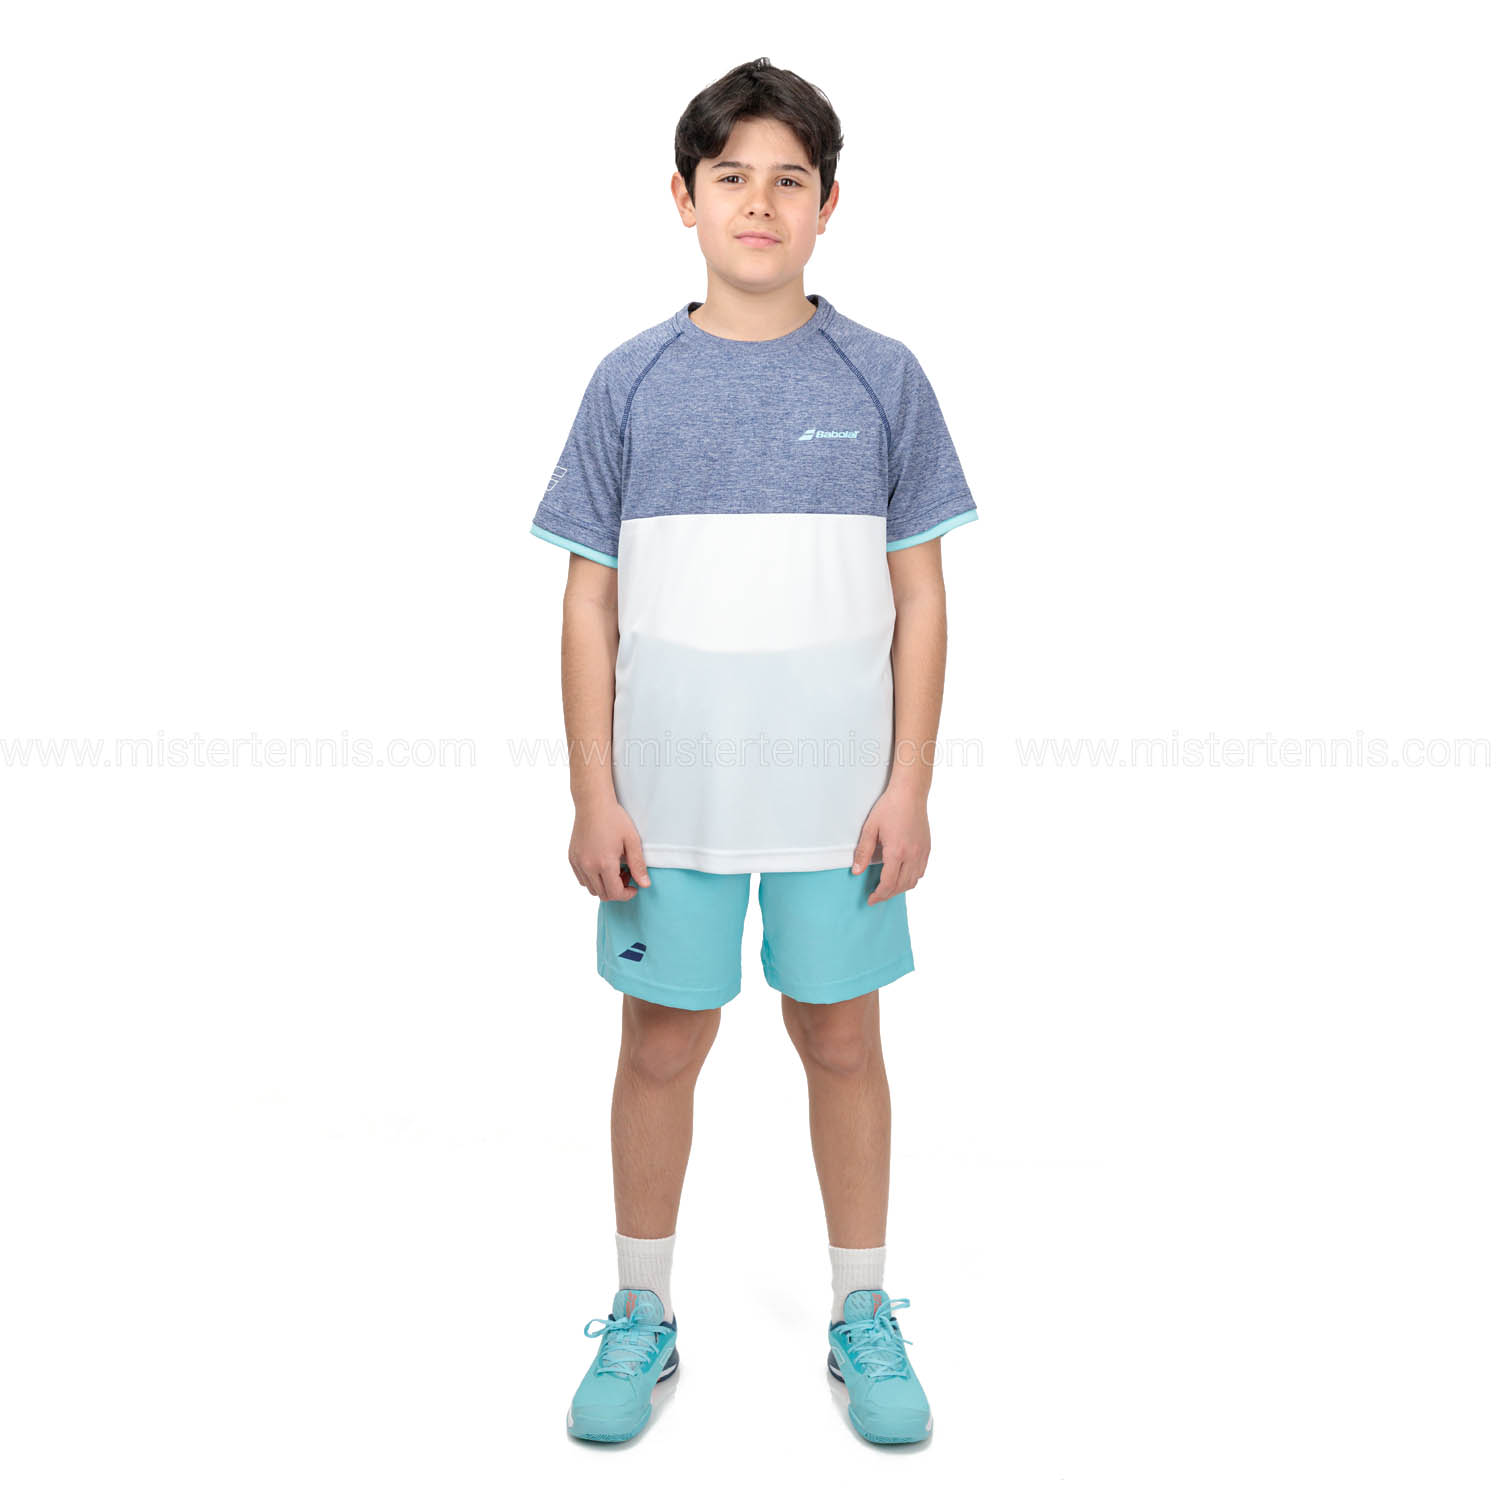 Babolat Play Crew Camiseta Niño - White/Blue Heather